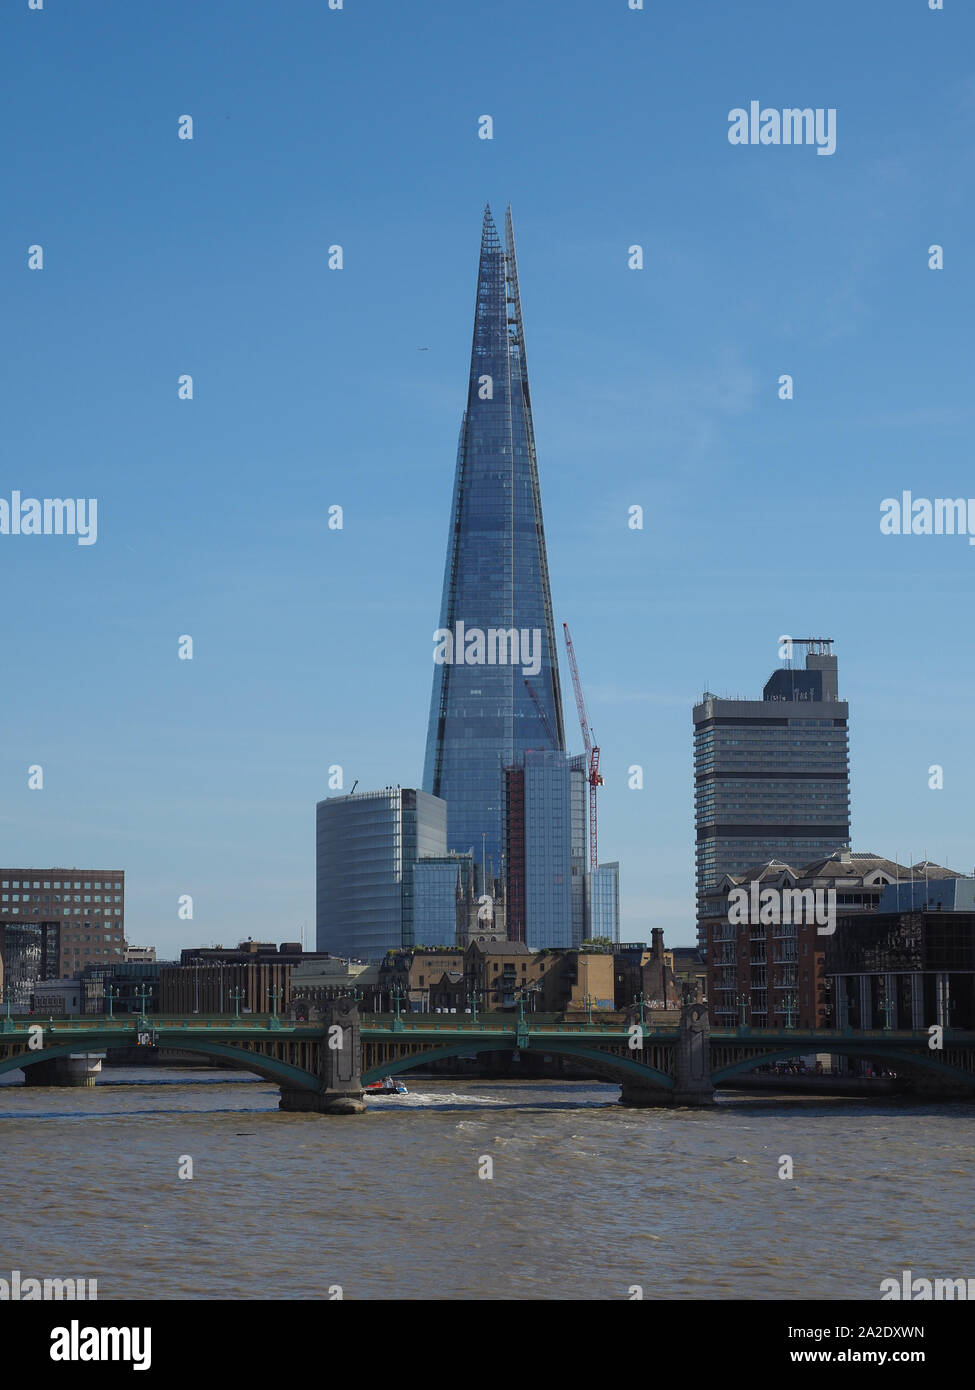 LONDON, Regno Unito - CIRCA NEL SETTEMBRE 2019: La Shard grattacielo progettato dall'architetto italiano Renzo Piano è il più alto edificio della città Foto Stock